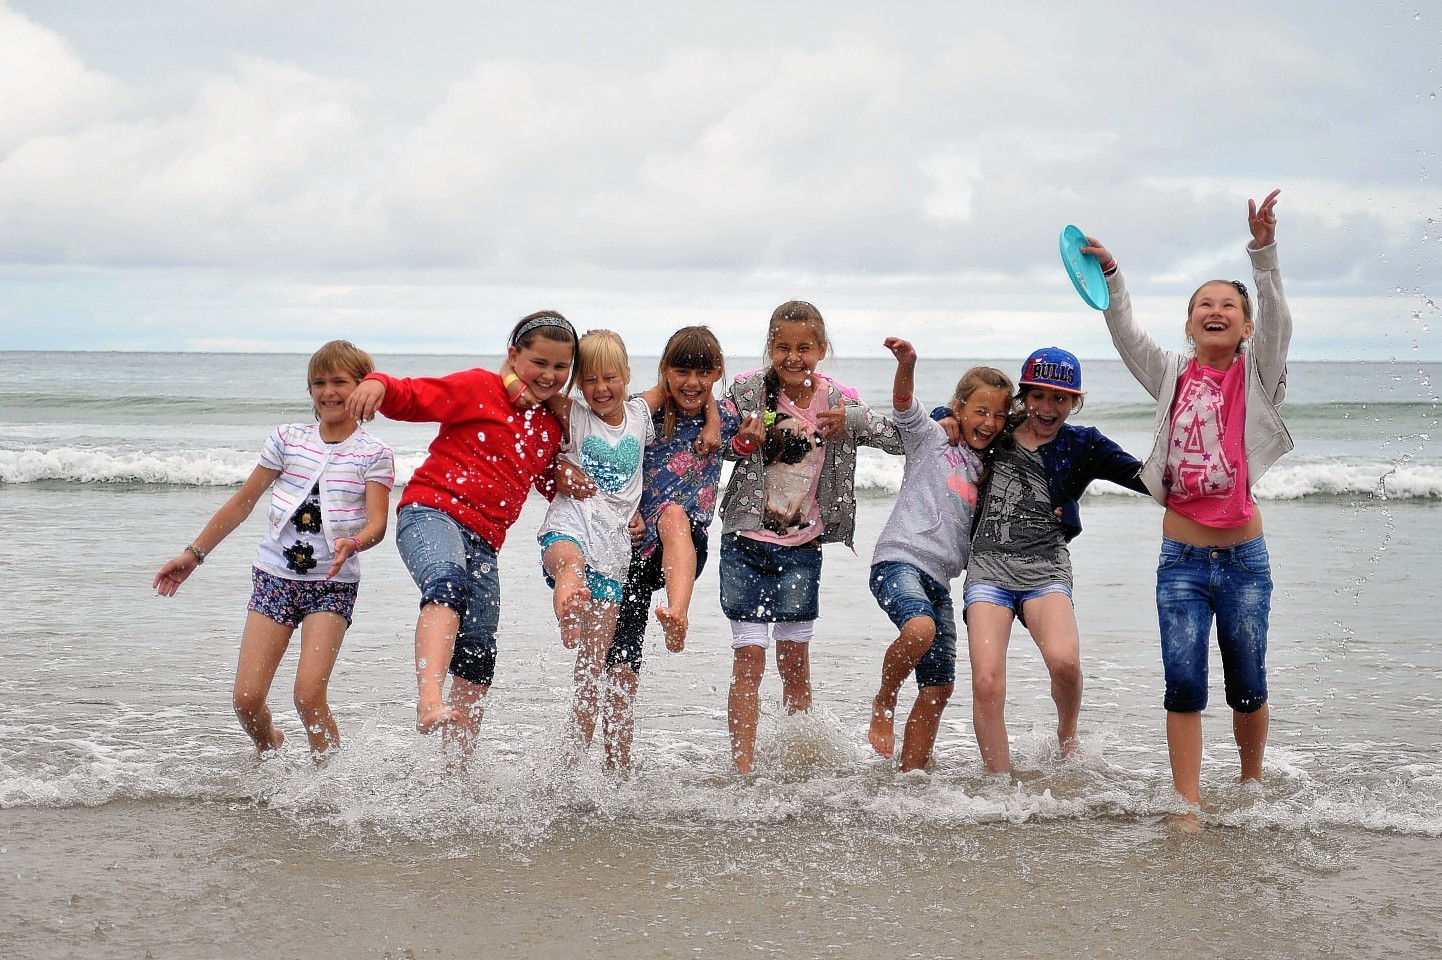 The children at Aberdeen beach